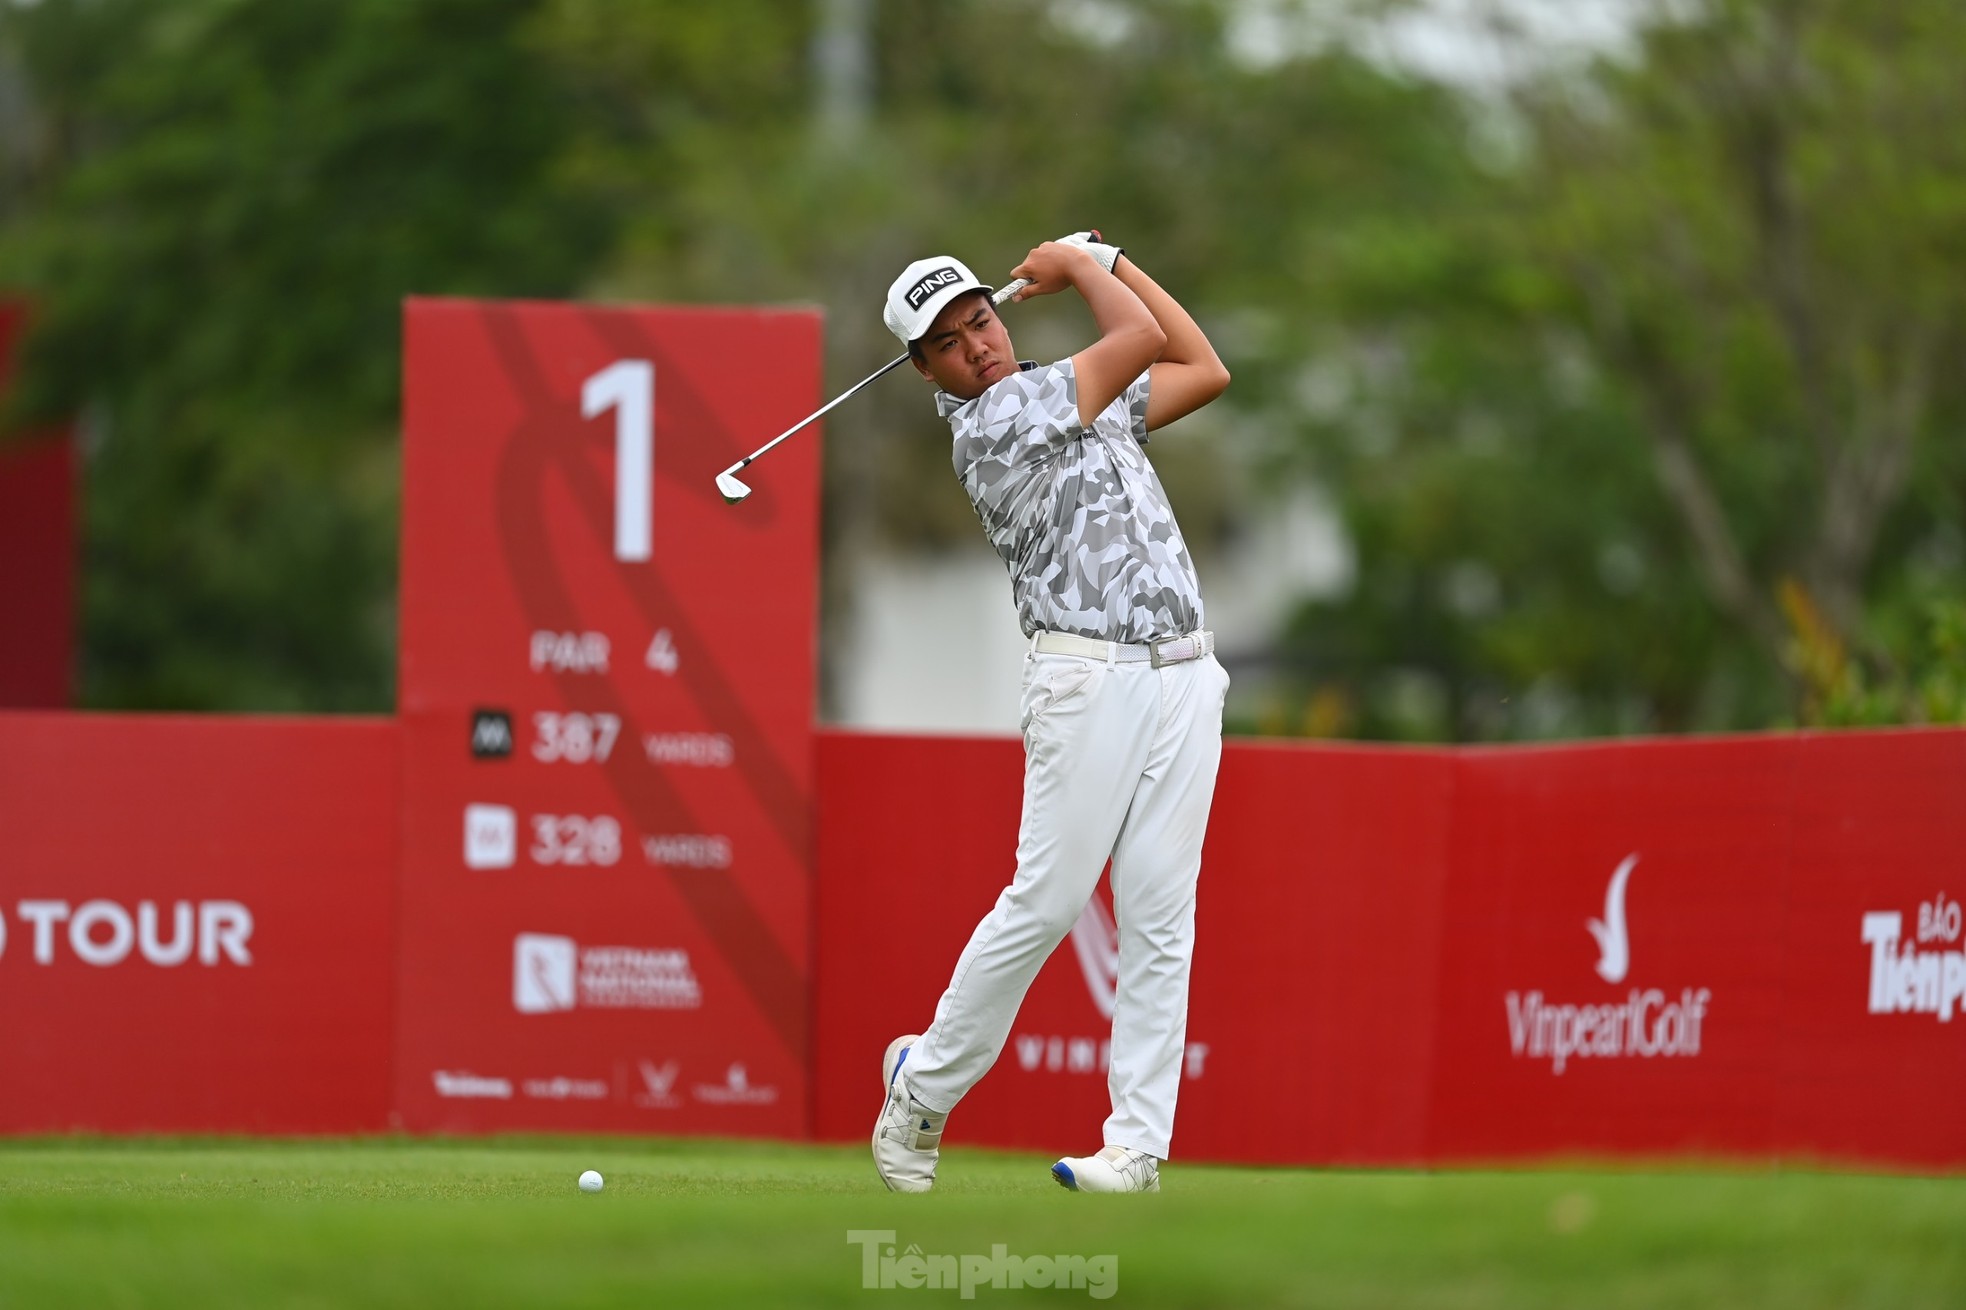 Giải vô địch Golf Quốc gia năm 2023: Nguyễn Đặng Minh chia sẻ bất ngờ xác lập kỷ lục -6 gậy - Ảnh 1.